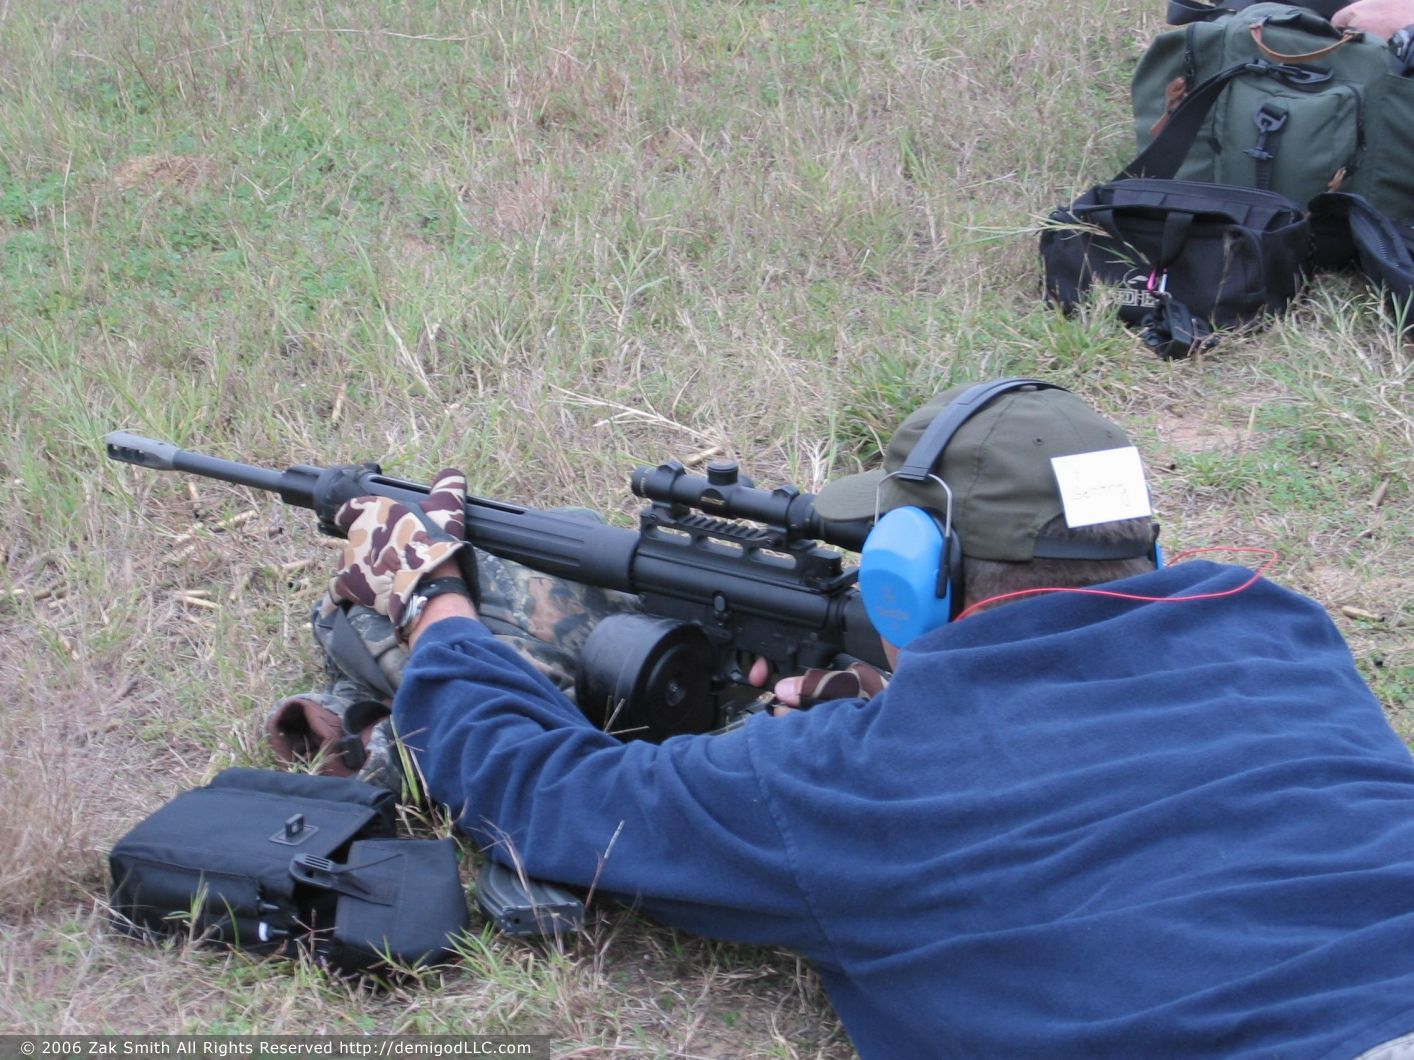 2004 Tiger Valley & Cavalry Arms 3Gun Match, Waco, TX
, photo 